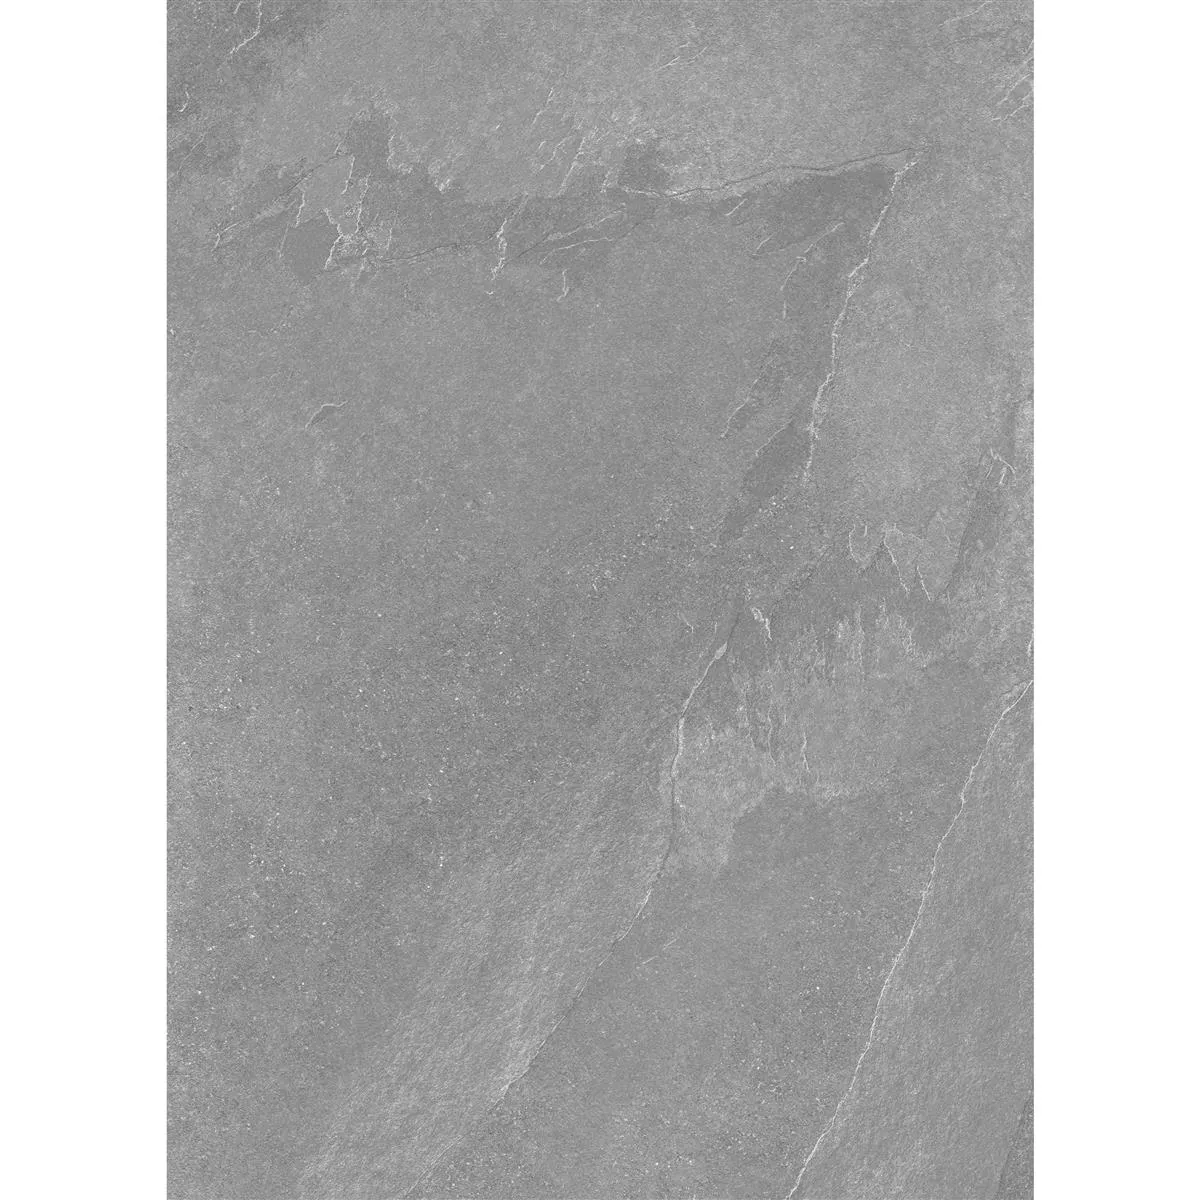 Ladrilho Memphis Olhar de Pedra R10/B Antracite 60x120cm